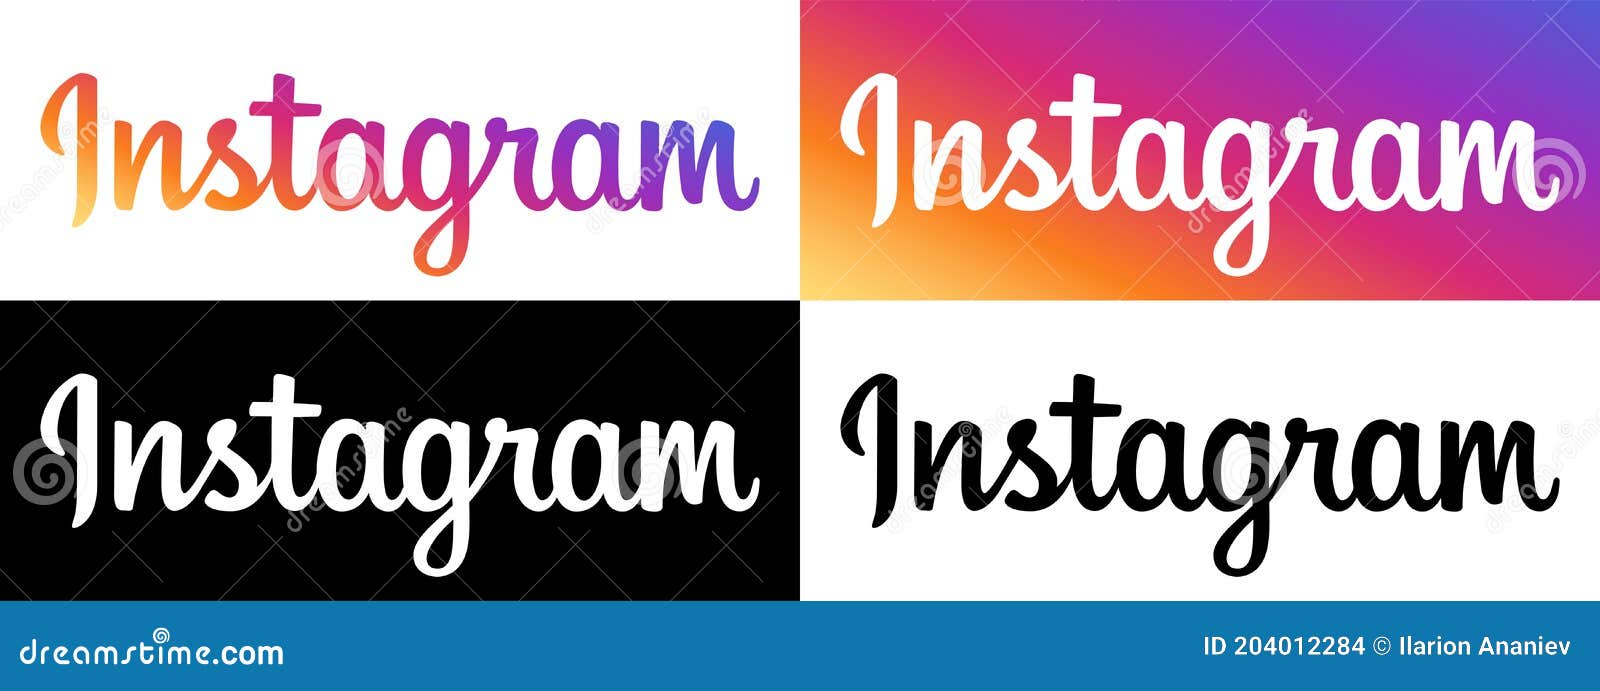 Instagram Logo Vector: Chào mừng đến với Instagram mới! Chúng tôi rất vui mừng giới thiệu logo vector Instagram đẹp mắt và cập nhật. Nói đến Instagram không thể thiếu biểu tượng logo độc đáo này, giờ đây bạn có thể dễ dàng sử dụng cho nhiều mục đích khác nhau. Hãy cùng khám phá và tải xuống logo vector Instagram ngay hôm nay.